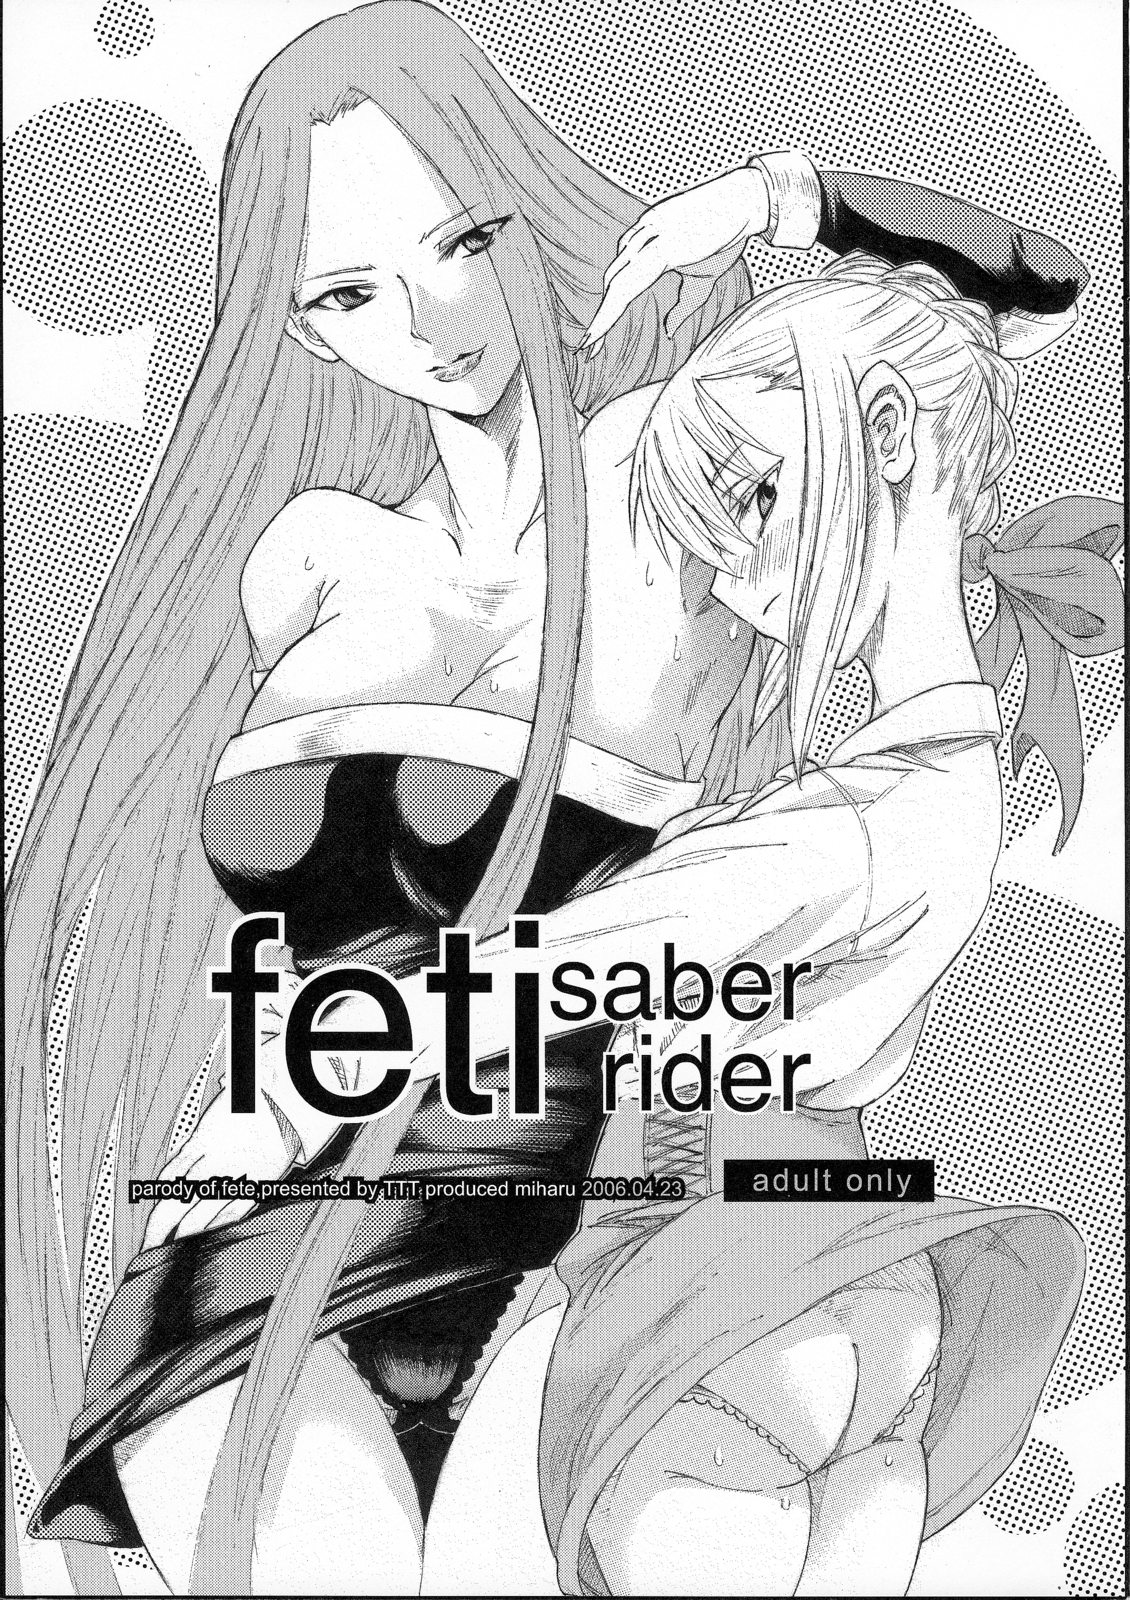 (SC31) [TTT (Miharu)] feti saber rider (Fate/stay night) page 1 full